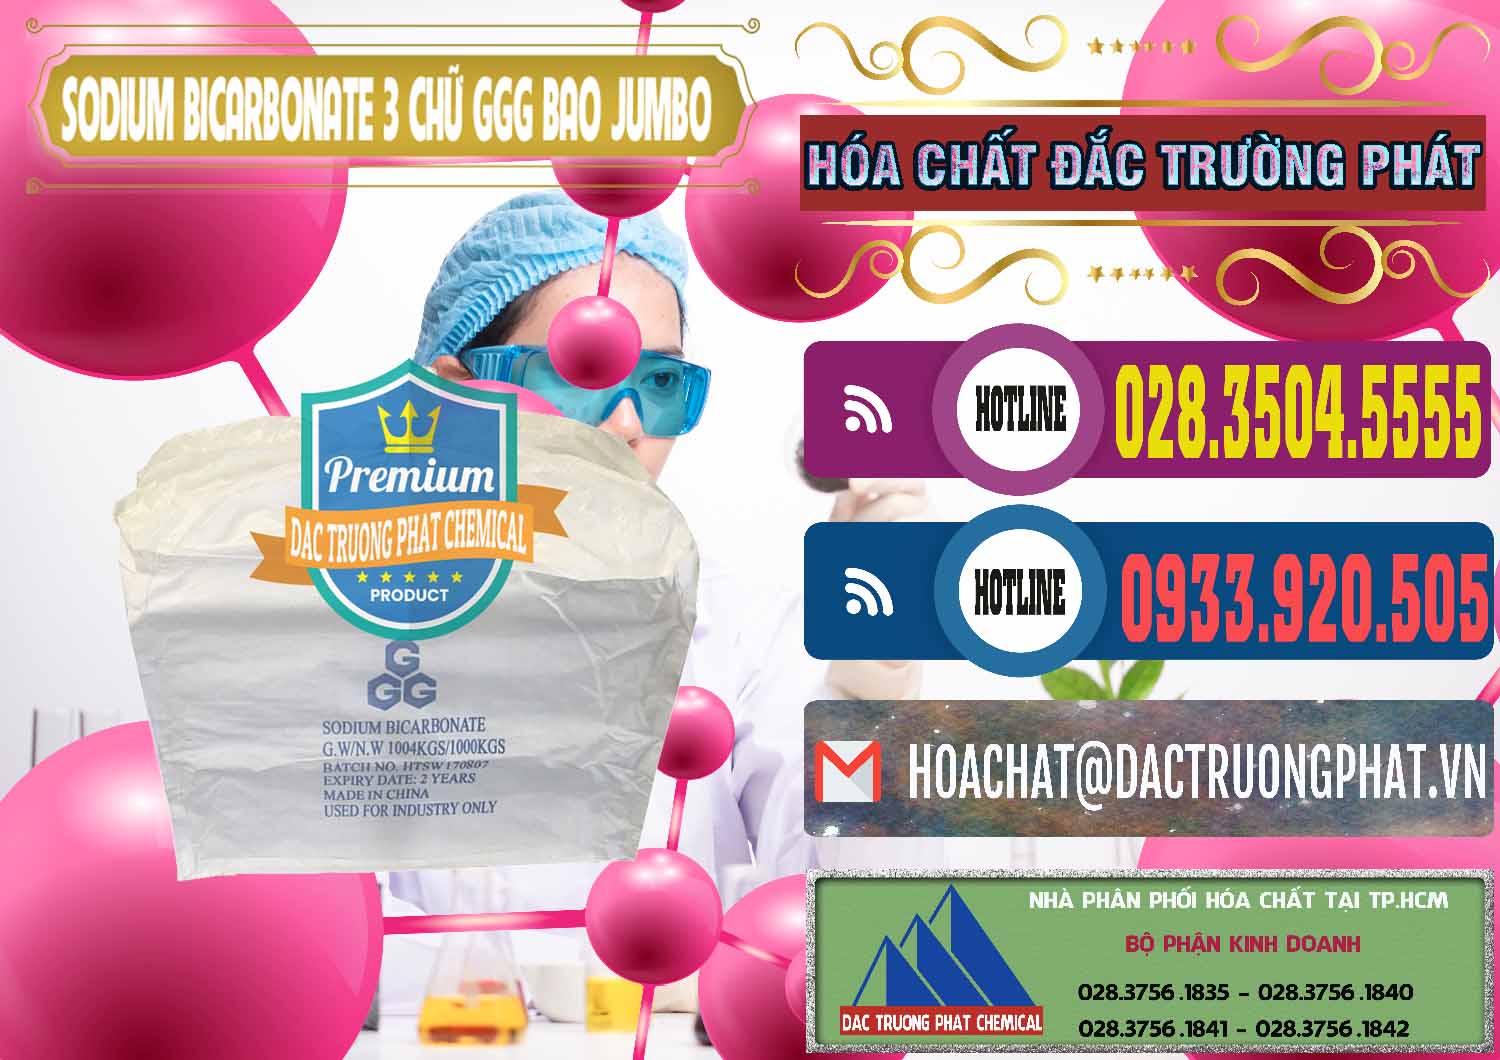 Nơi bán & phân phối Sodium Bicarbonate – Bicar NaHCO3 Food Grade 3 Chữ GGG Bao Jumbo ( Bành ) Trung Quốc China - 0260 - Nhà nhập khẩu và phân phối hóa chất tại TP.HCM - muabanhoachat.com.vn